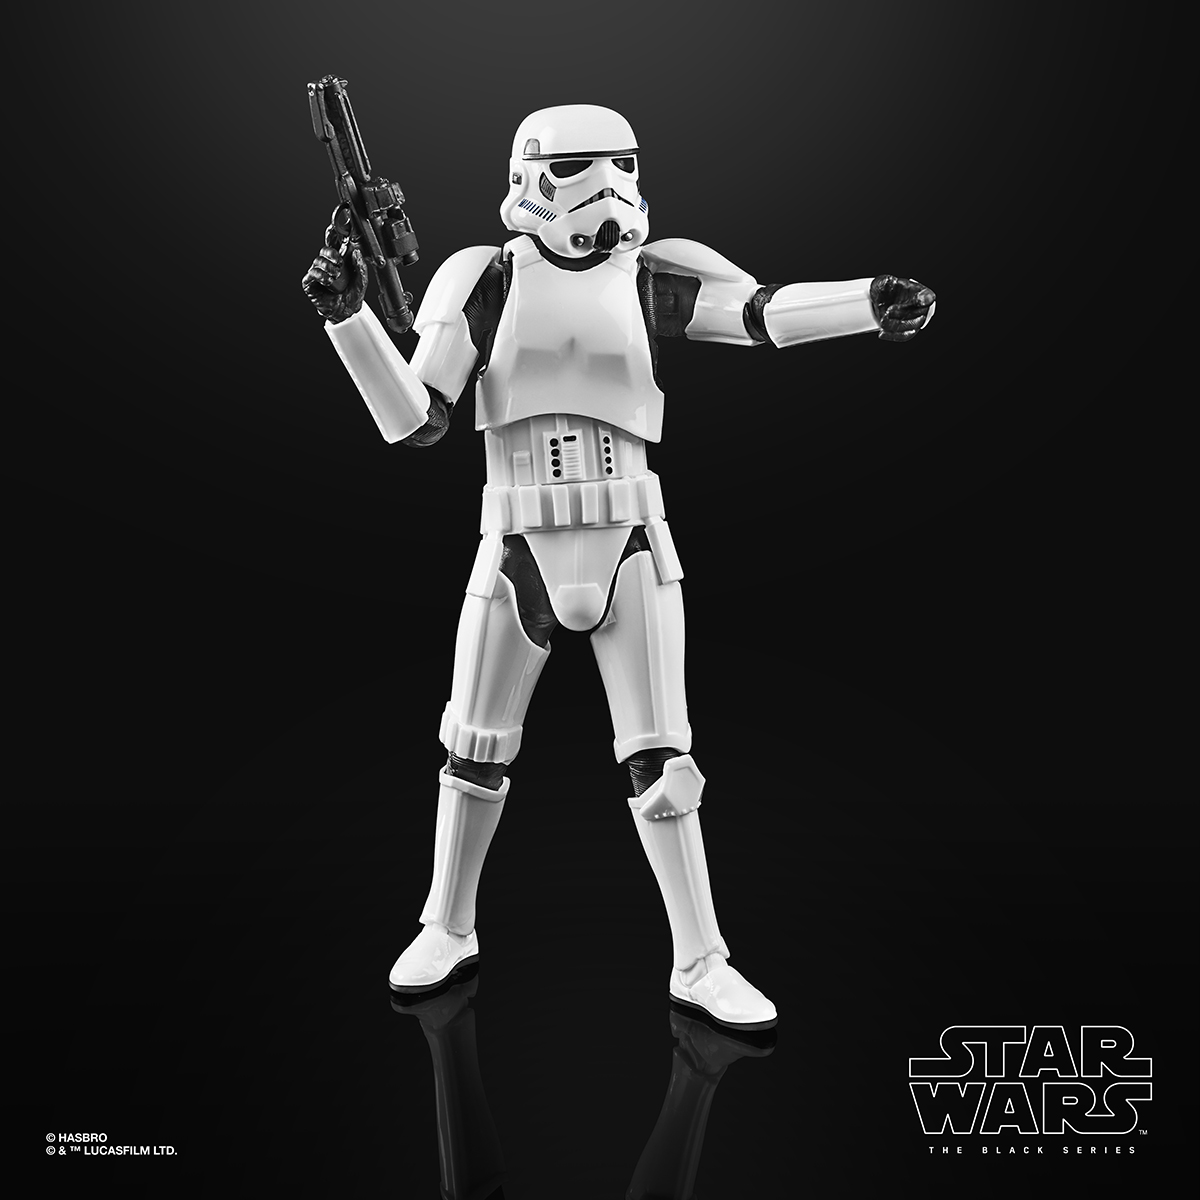 Star Wars The Black Series 6 Inch Imperial Stormtrooper Figure Oop 1